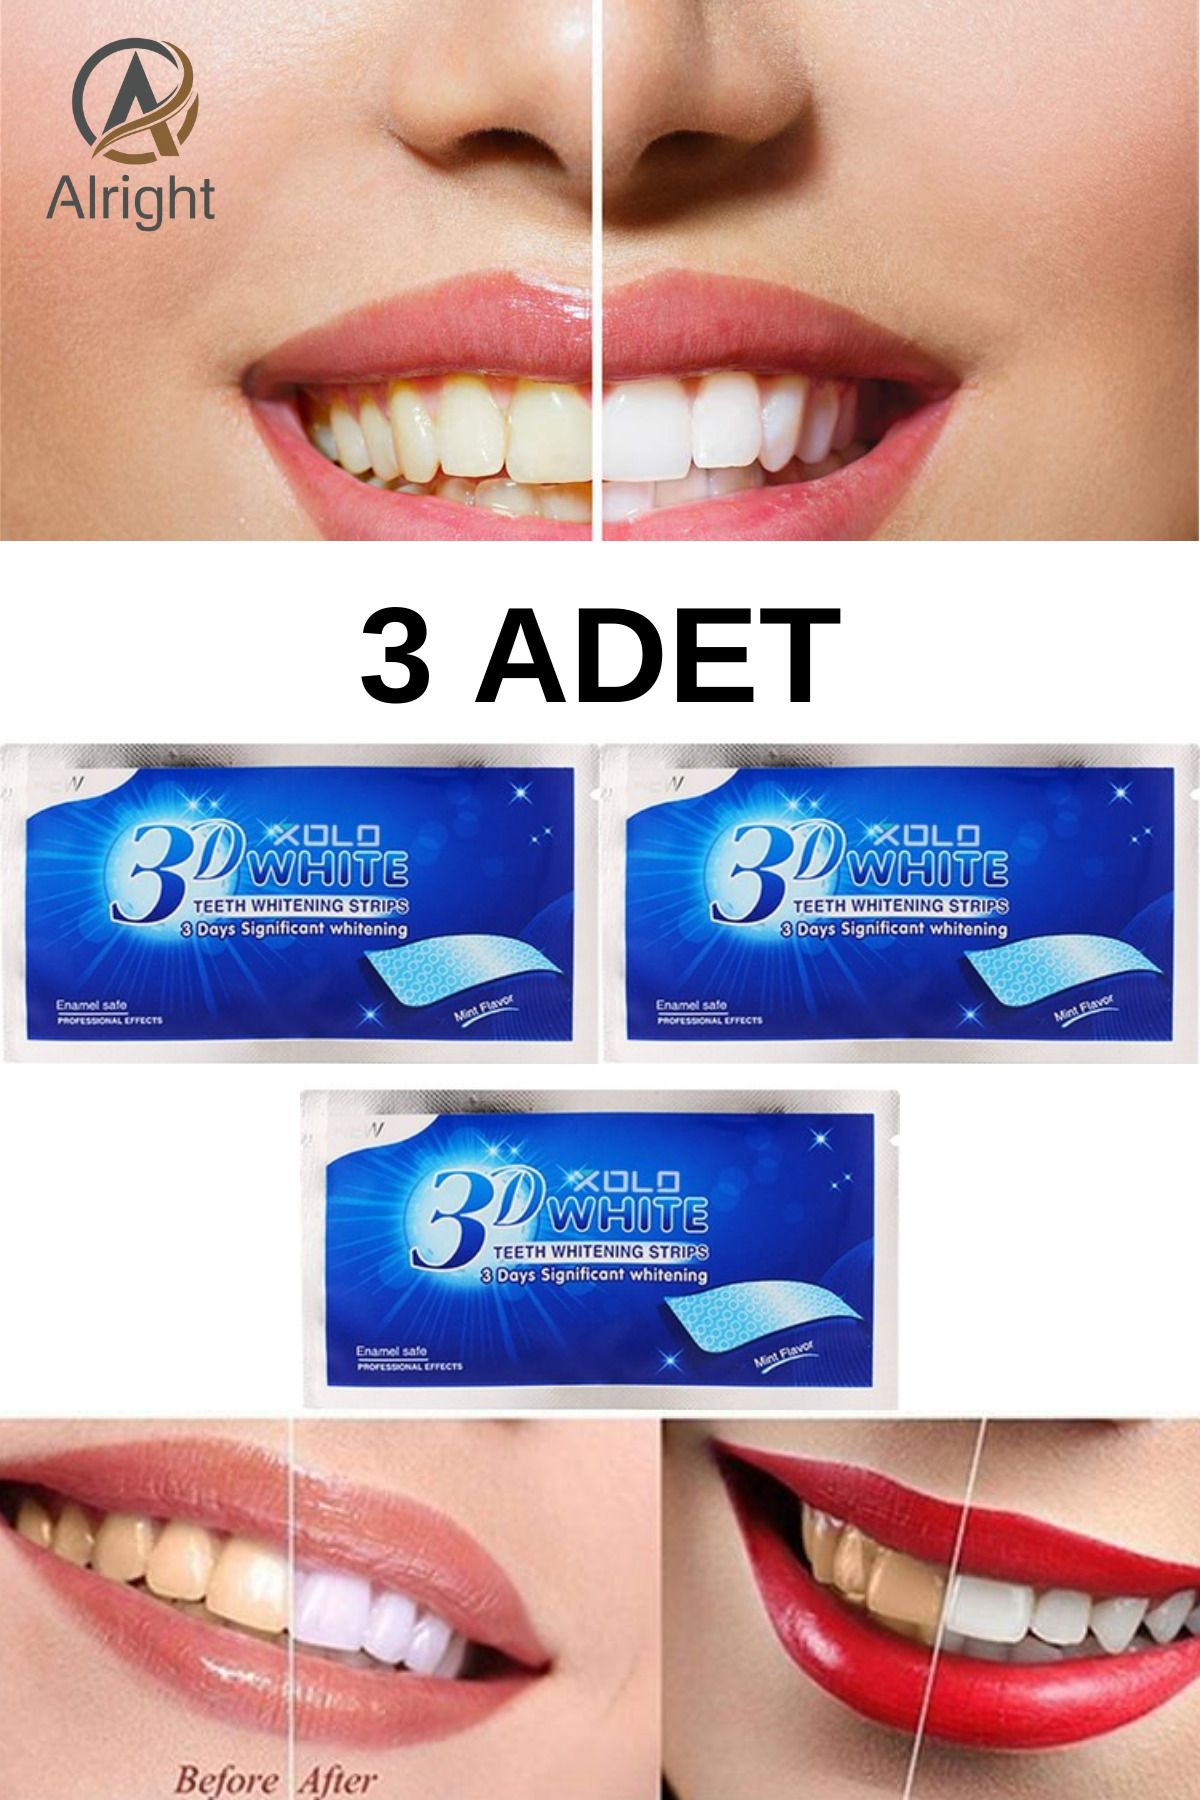 Alright 3D White 3 Adet Diş Beyazlatma Bandı Anında Beyazlama (Teeth Whitening Strip)